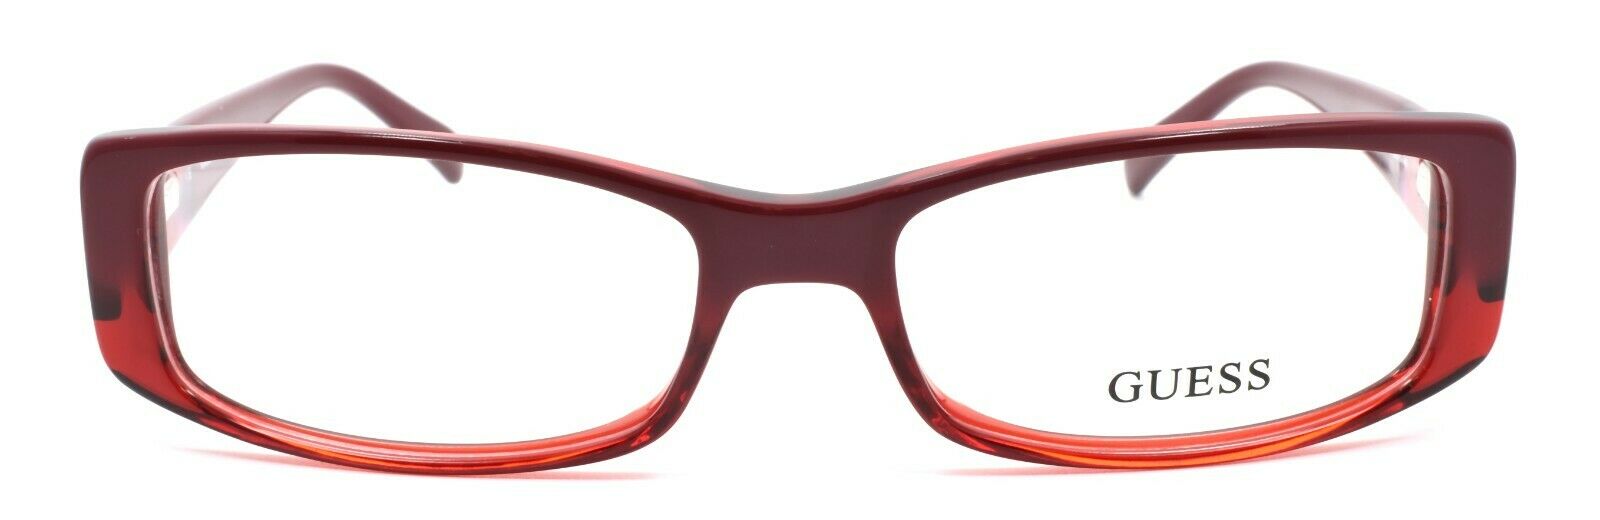 2-GUESS GU2409 RD Women's Eyeglasses Frames 53-16-140 Red-715583959828-IKSpecs